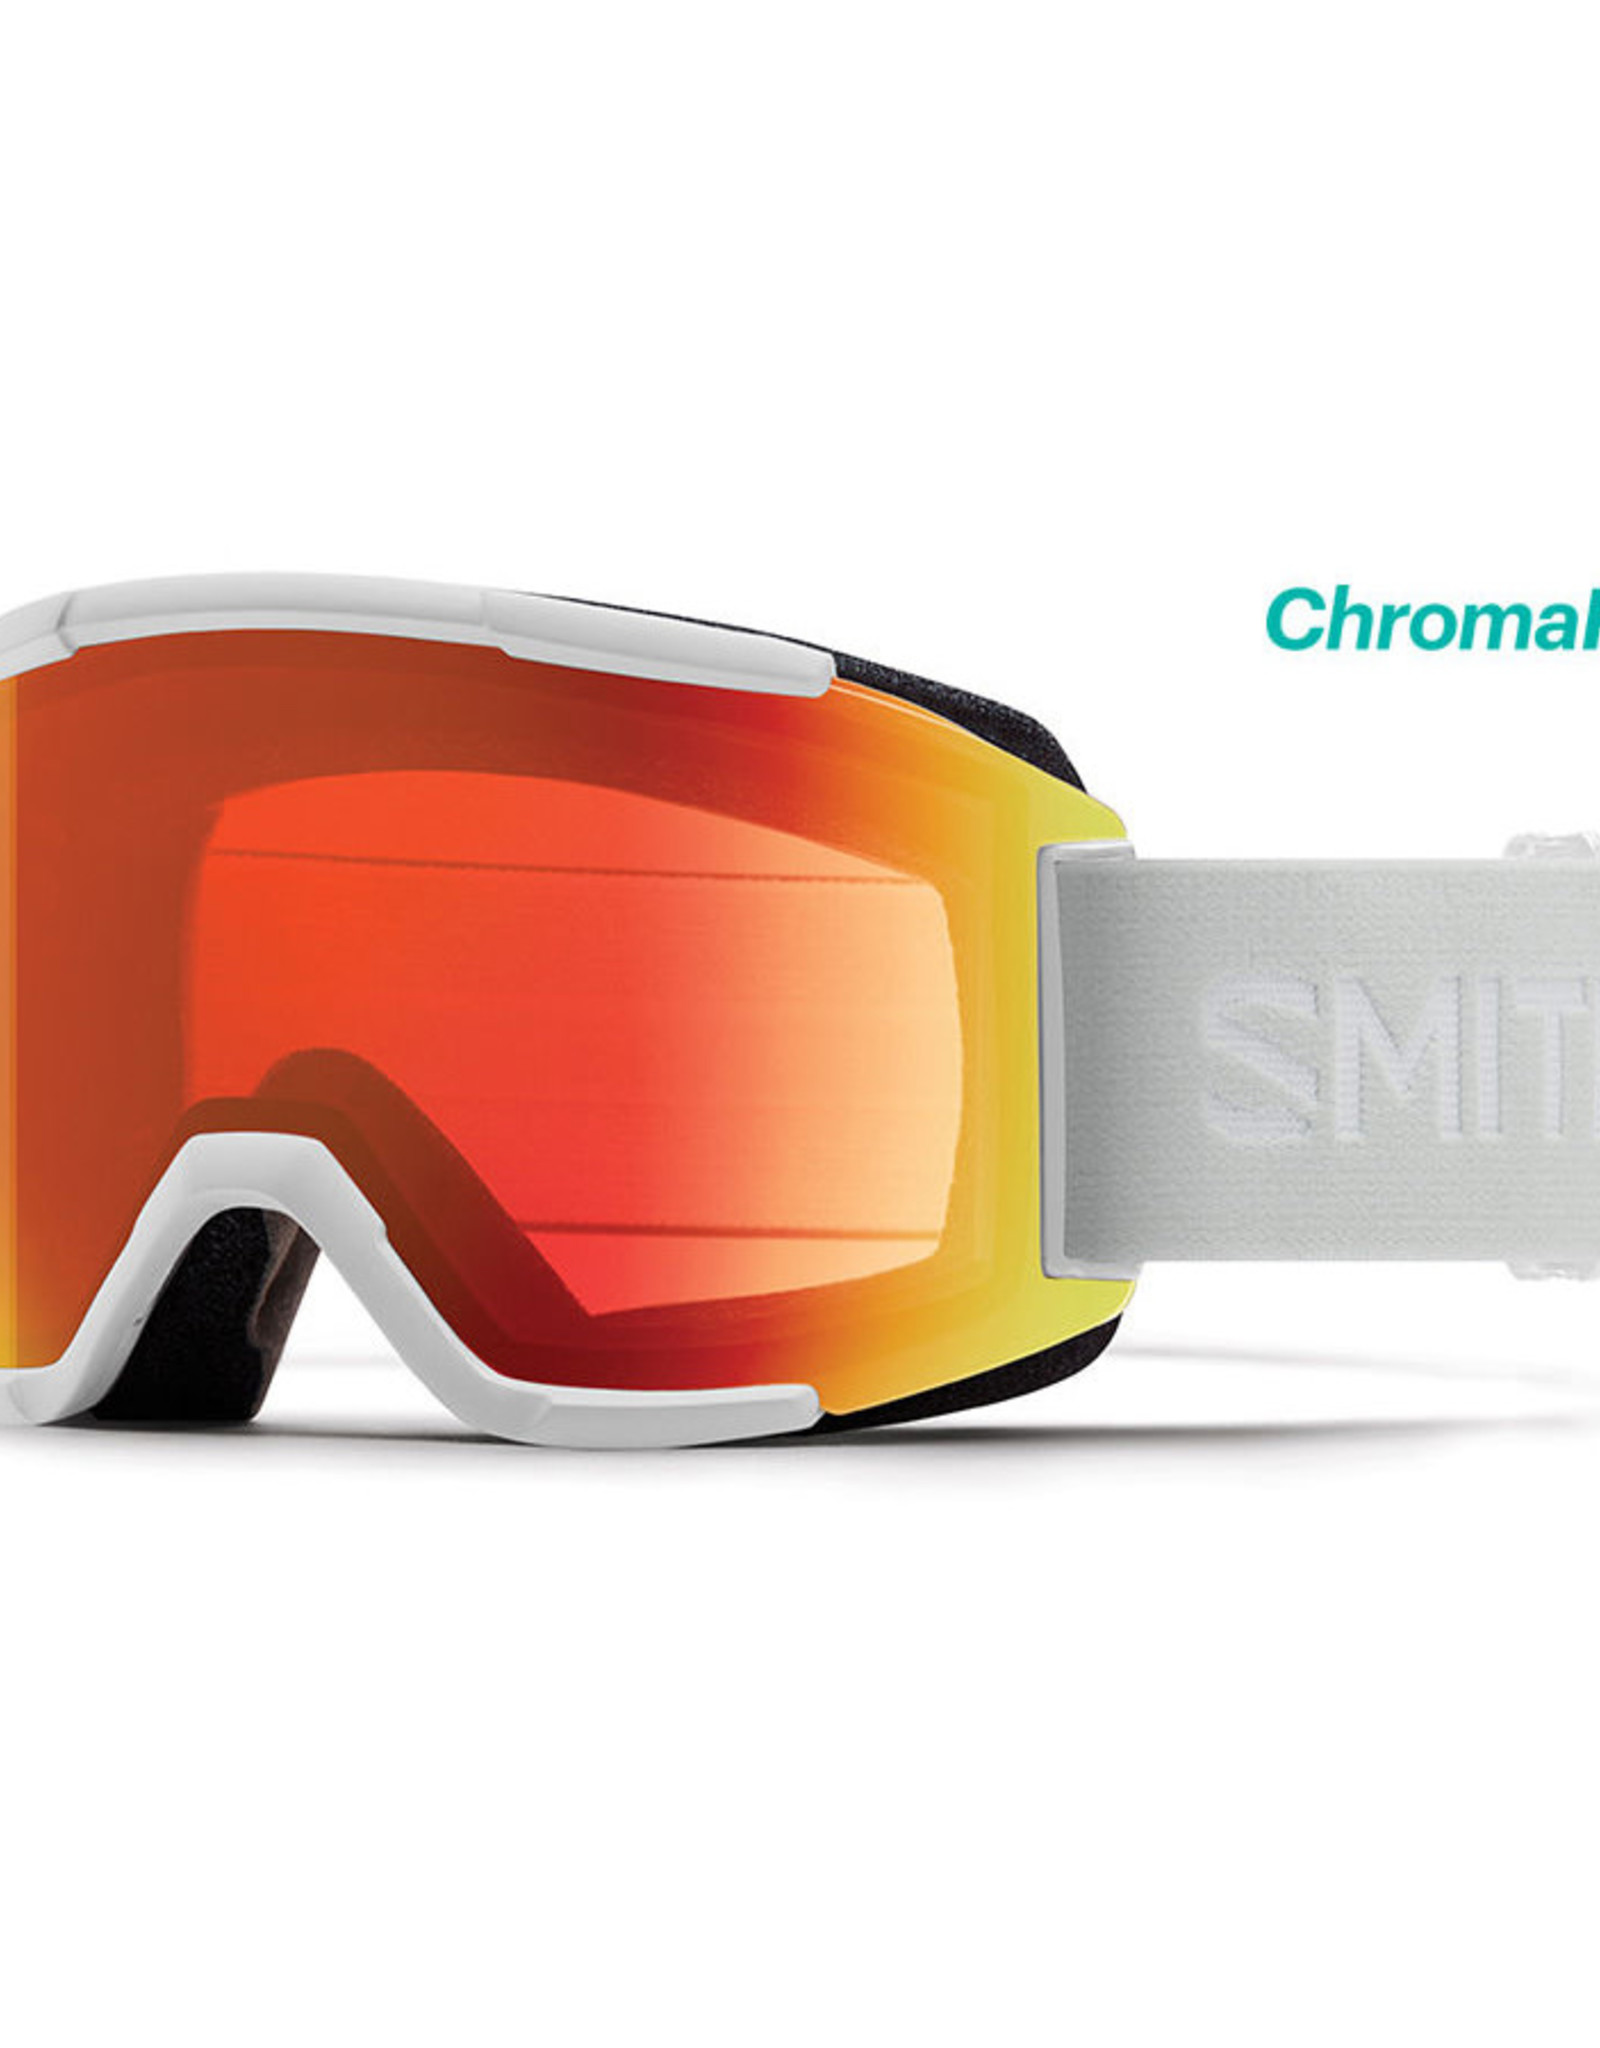 Smith Optics Smith - SQUAD - White Vapor w/ CP Everyday Red Mirror + Bonus Lens